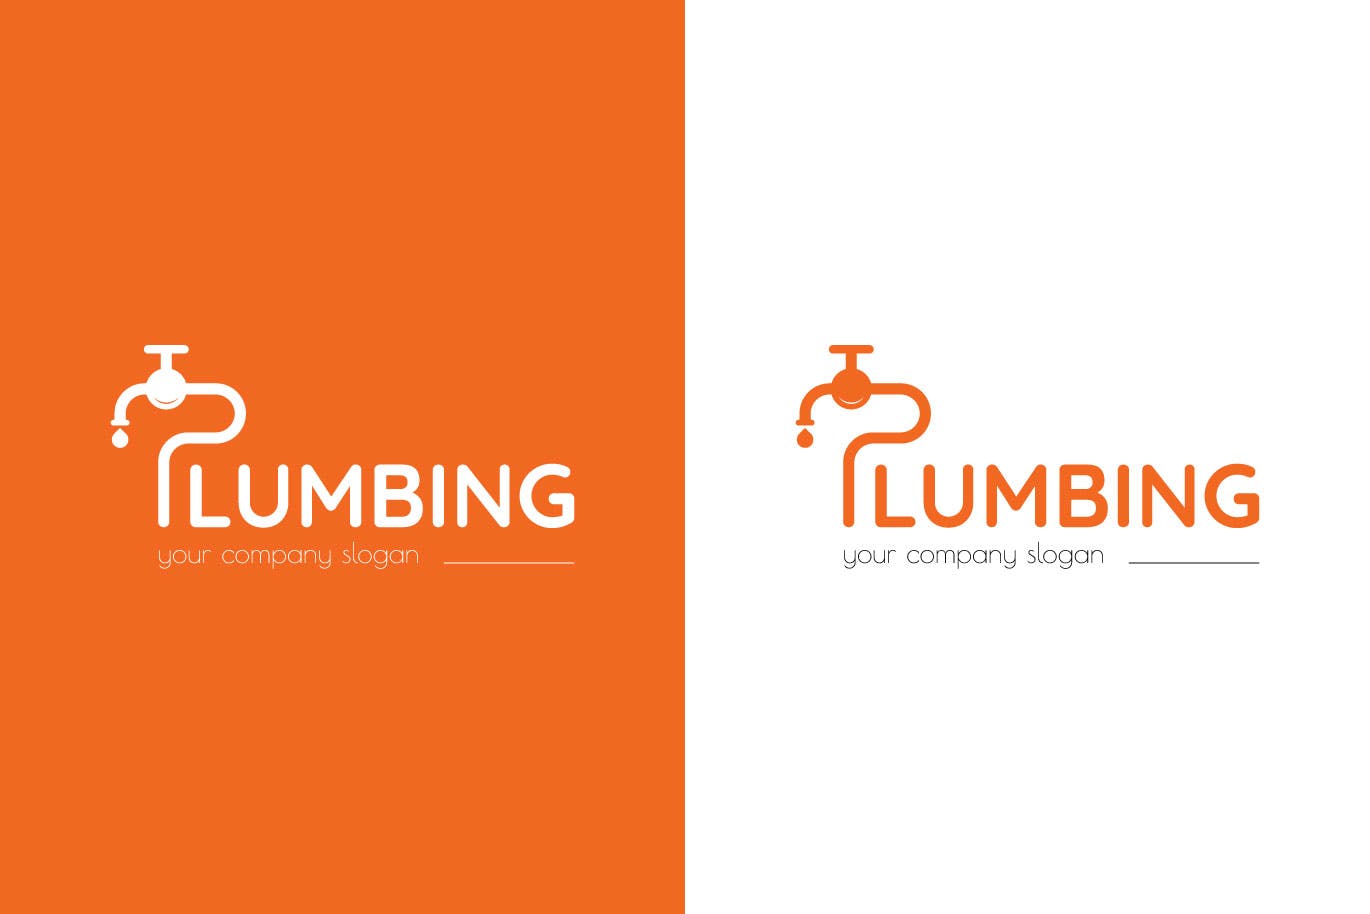 字母P图形供水设施品牌Logo设计素材库精选模板 Plumbing Business Logo Template插图(1)